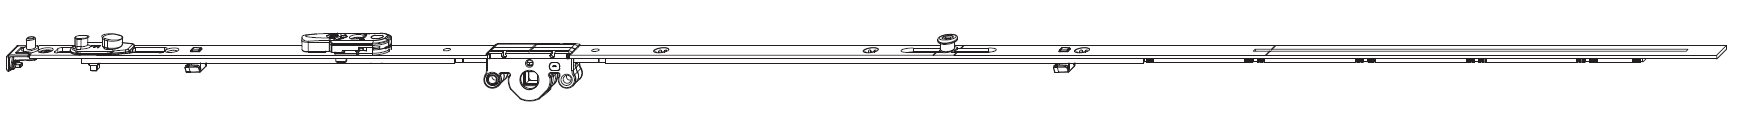 MAICO -  Cremonese MULTI-MATIC anta ribalta antieffrazione altezza maniglia fissa con piedino e dss per ribalta e bilanciere - gr / dim. 1090 - entrata 15 - alt. man. 300 - lbb/hbb 841 - 1090